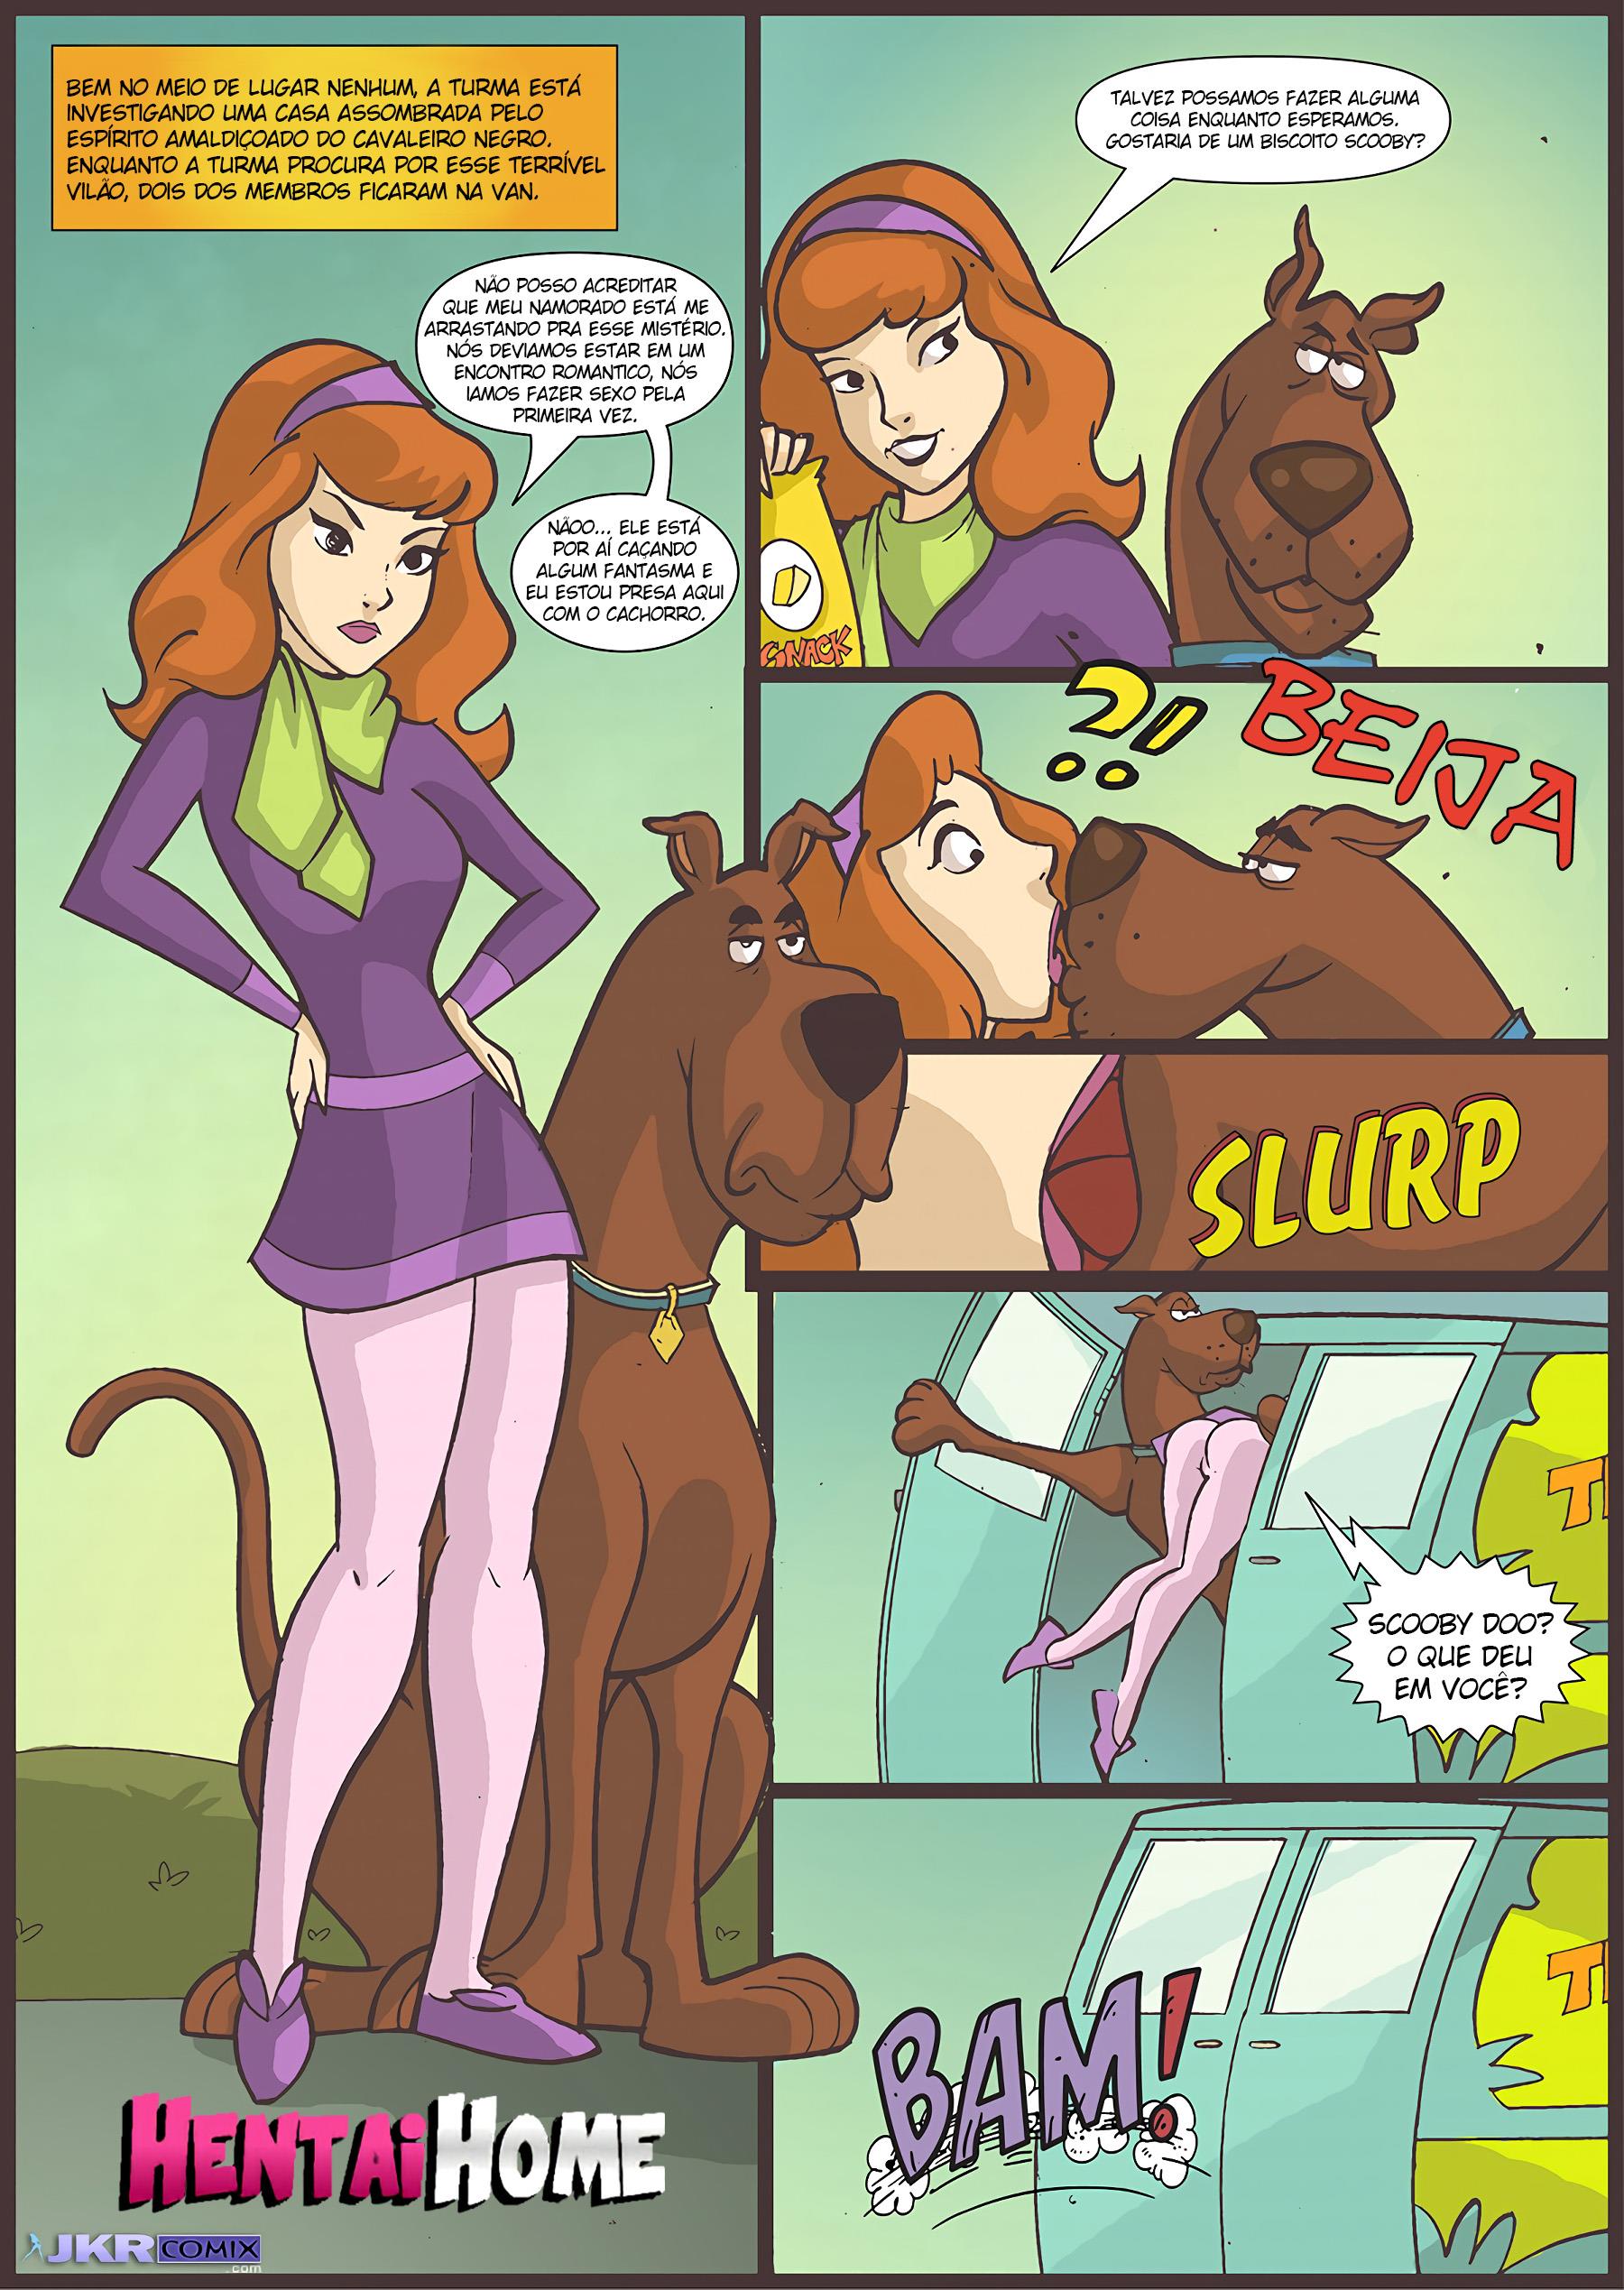 Scooby Doo: O cachorro mau tira cabaço de Daphne